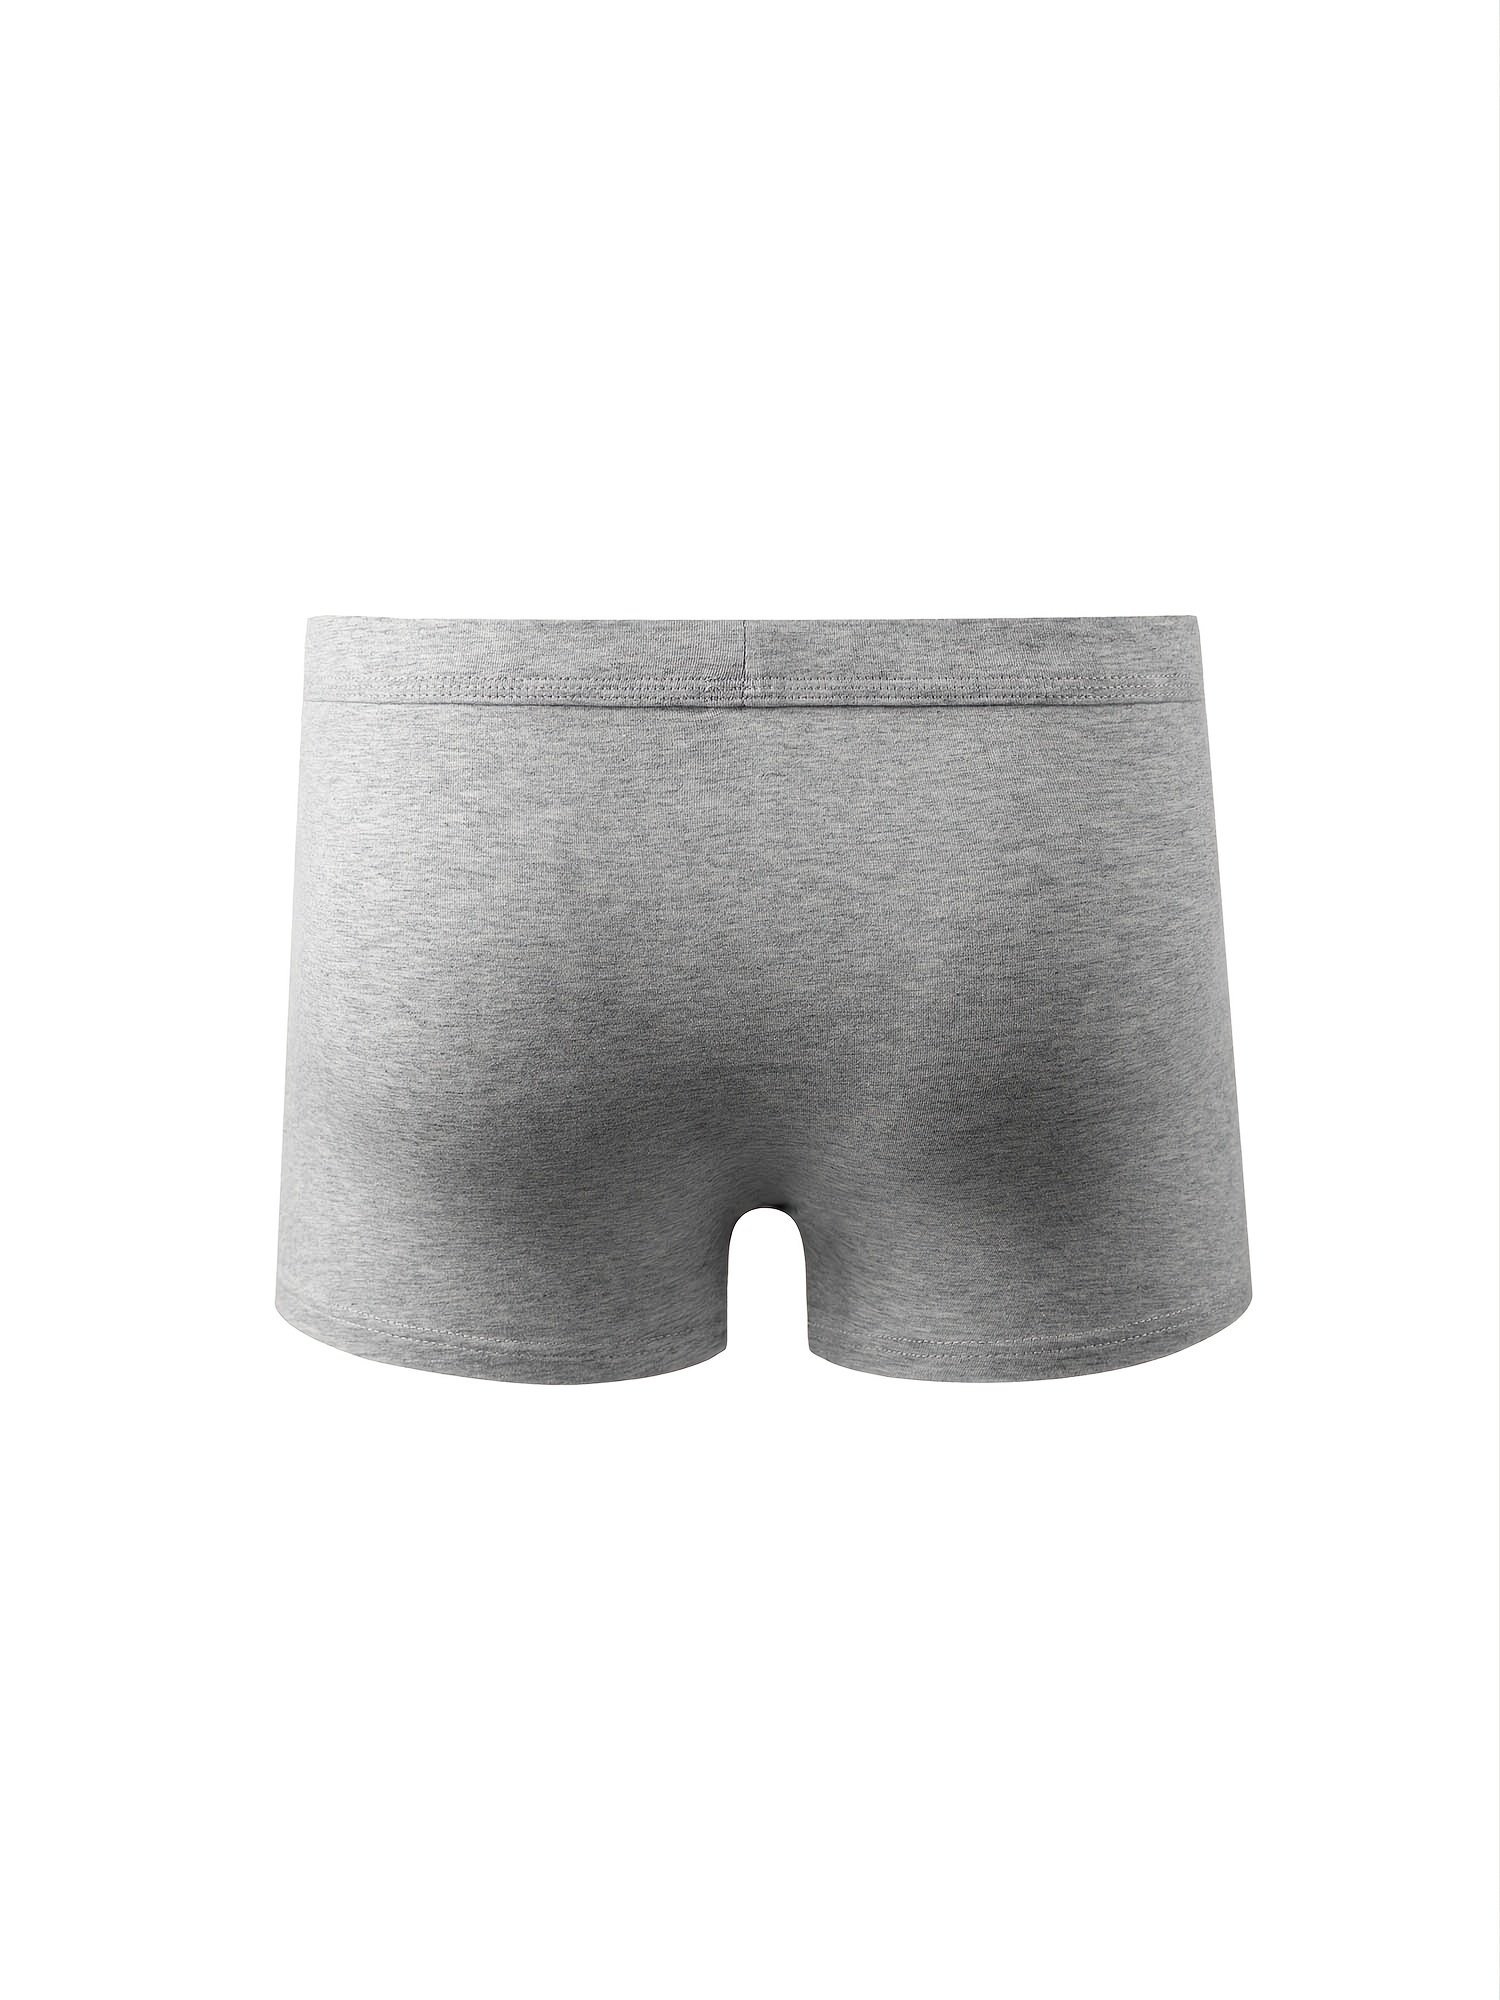 BJUTIR Panties For Men Casual Mesh Solid Underwear Pant Separated Type  Knickers Comfortable Boxers Mens Underwear